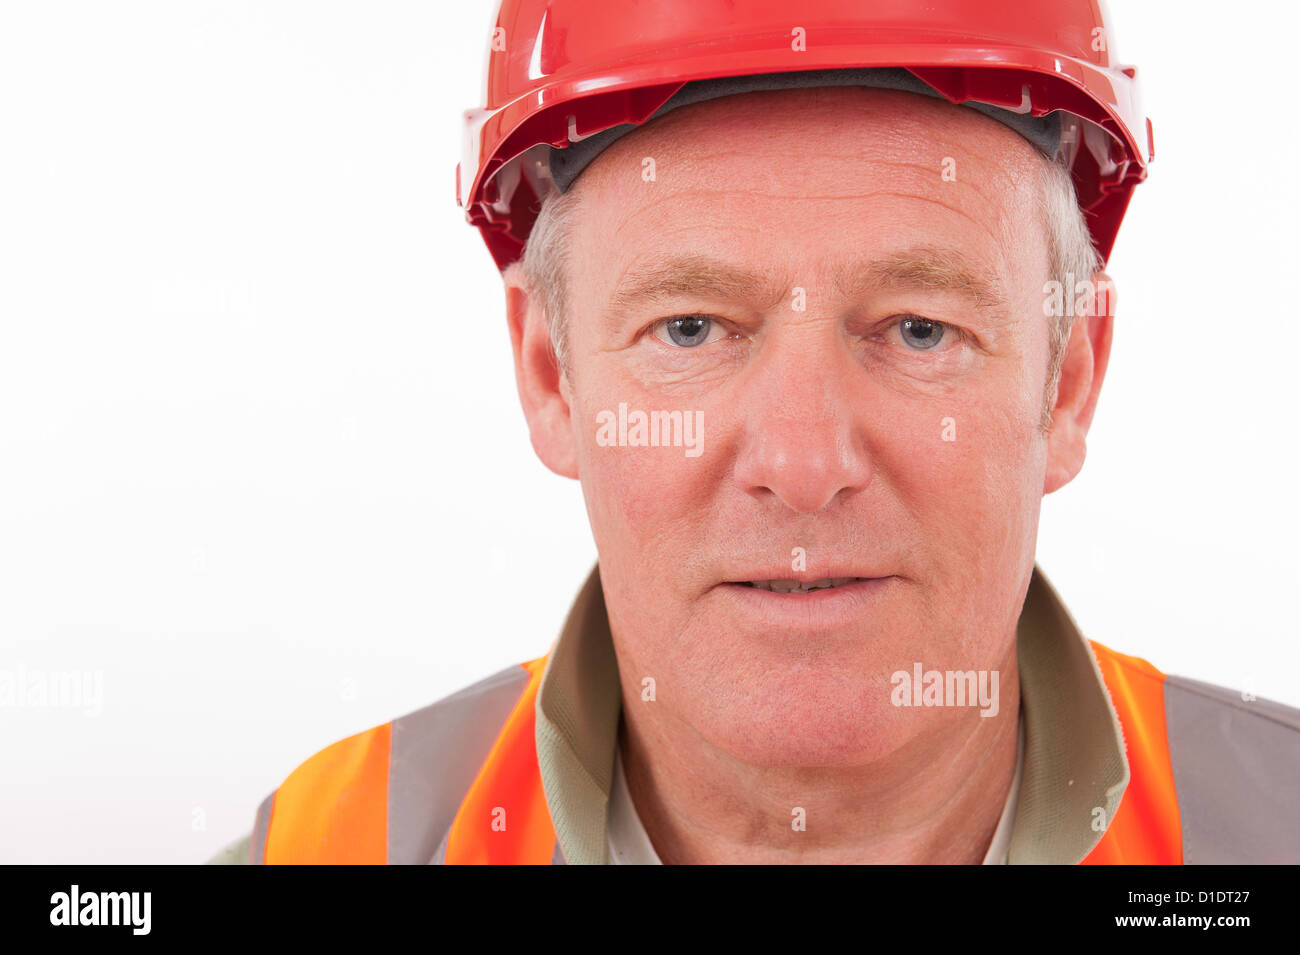 Porträt eines Bauarbeiters tragen einen roten Schutzhelm hautnah und hellen Jacke hi-viz. Stockfoto